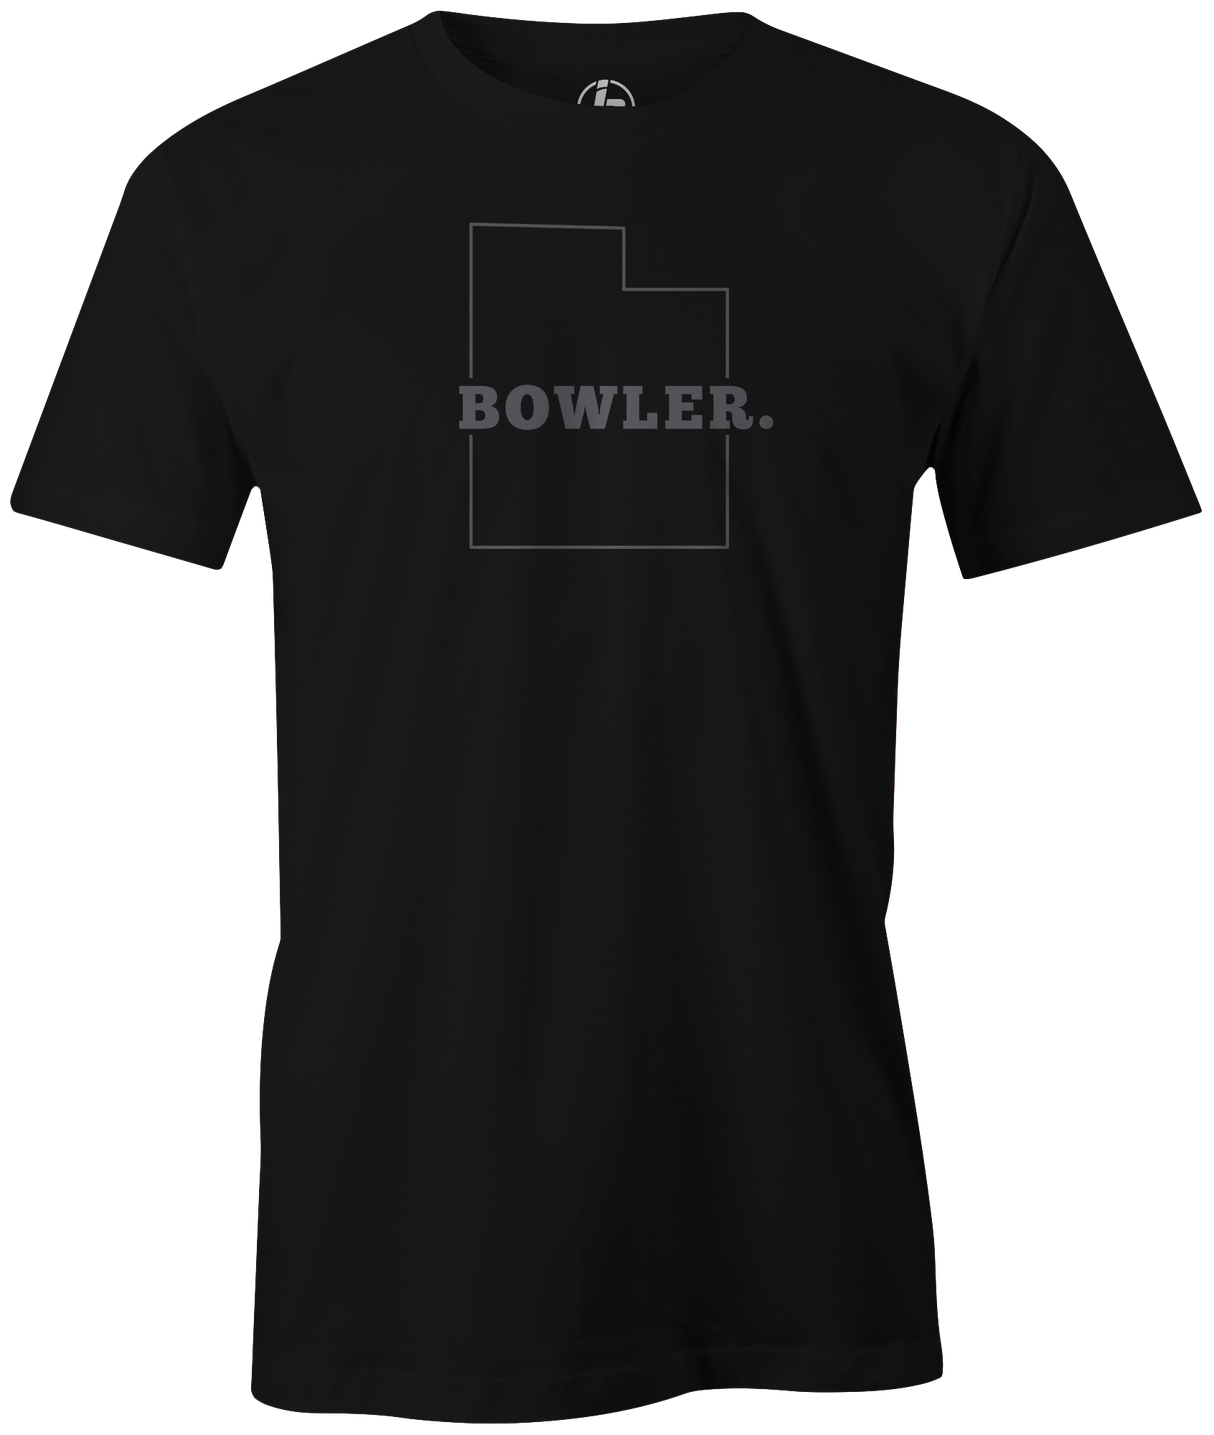 SALE - Utah Bowler | Black Large